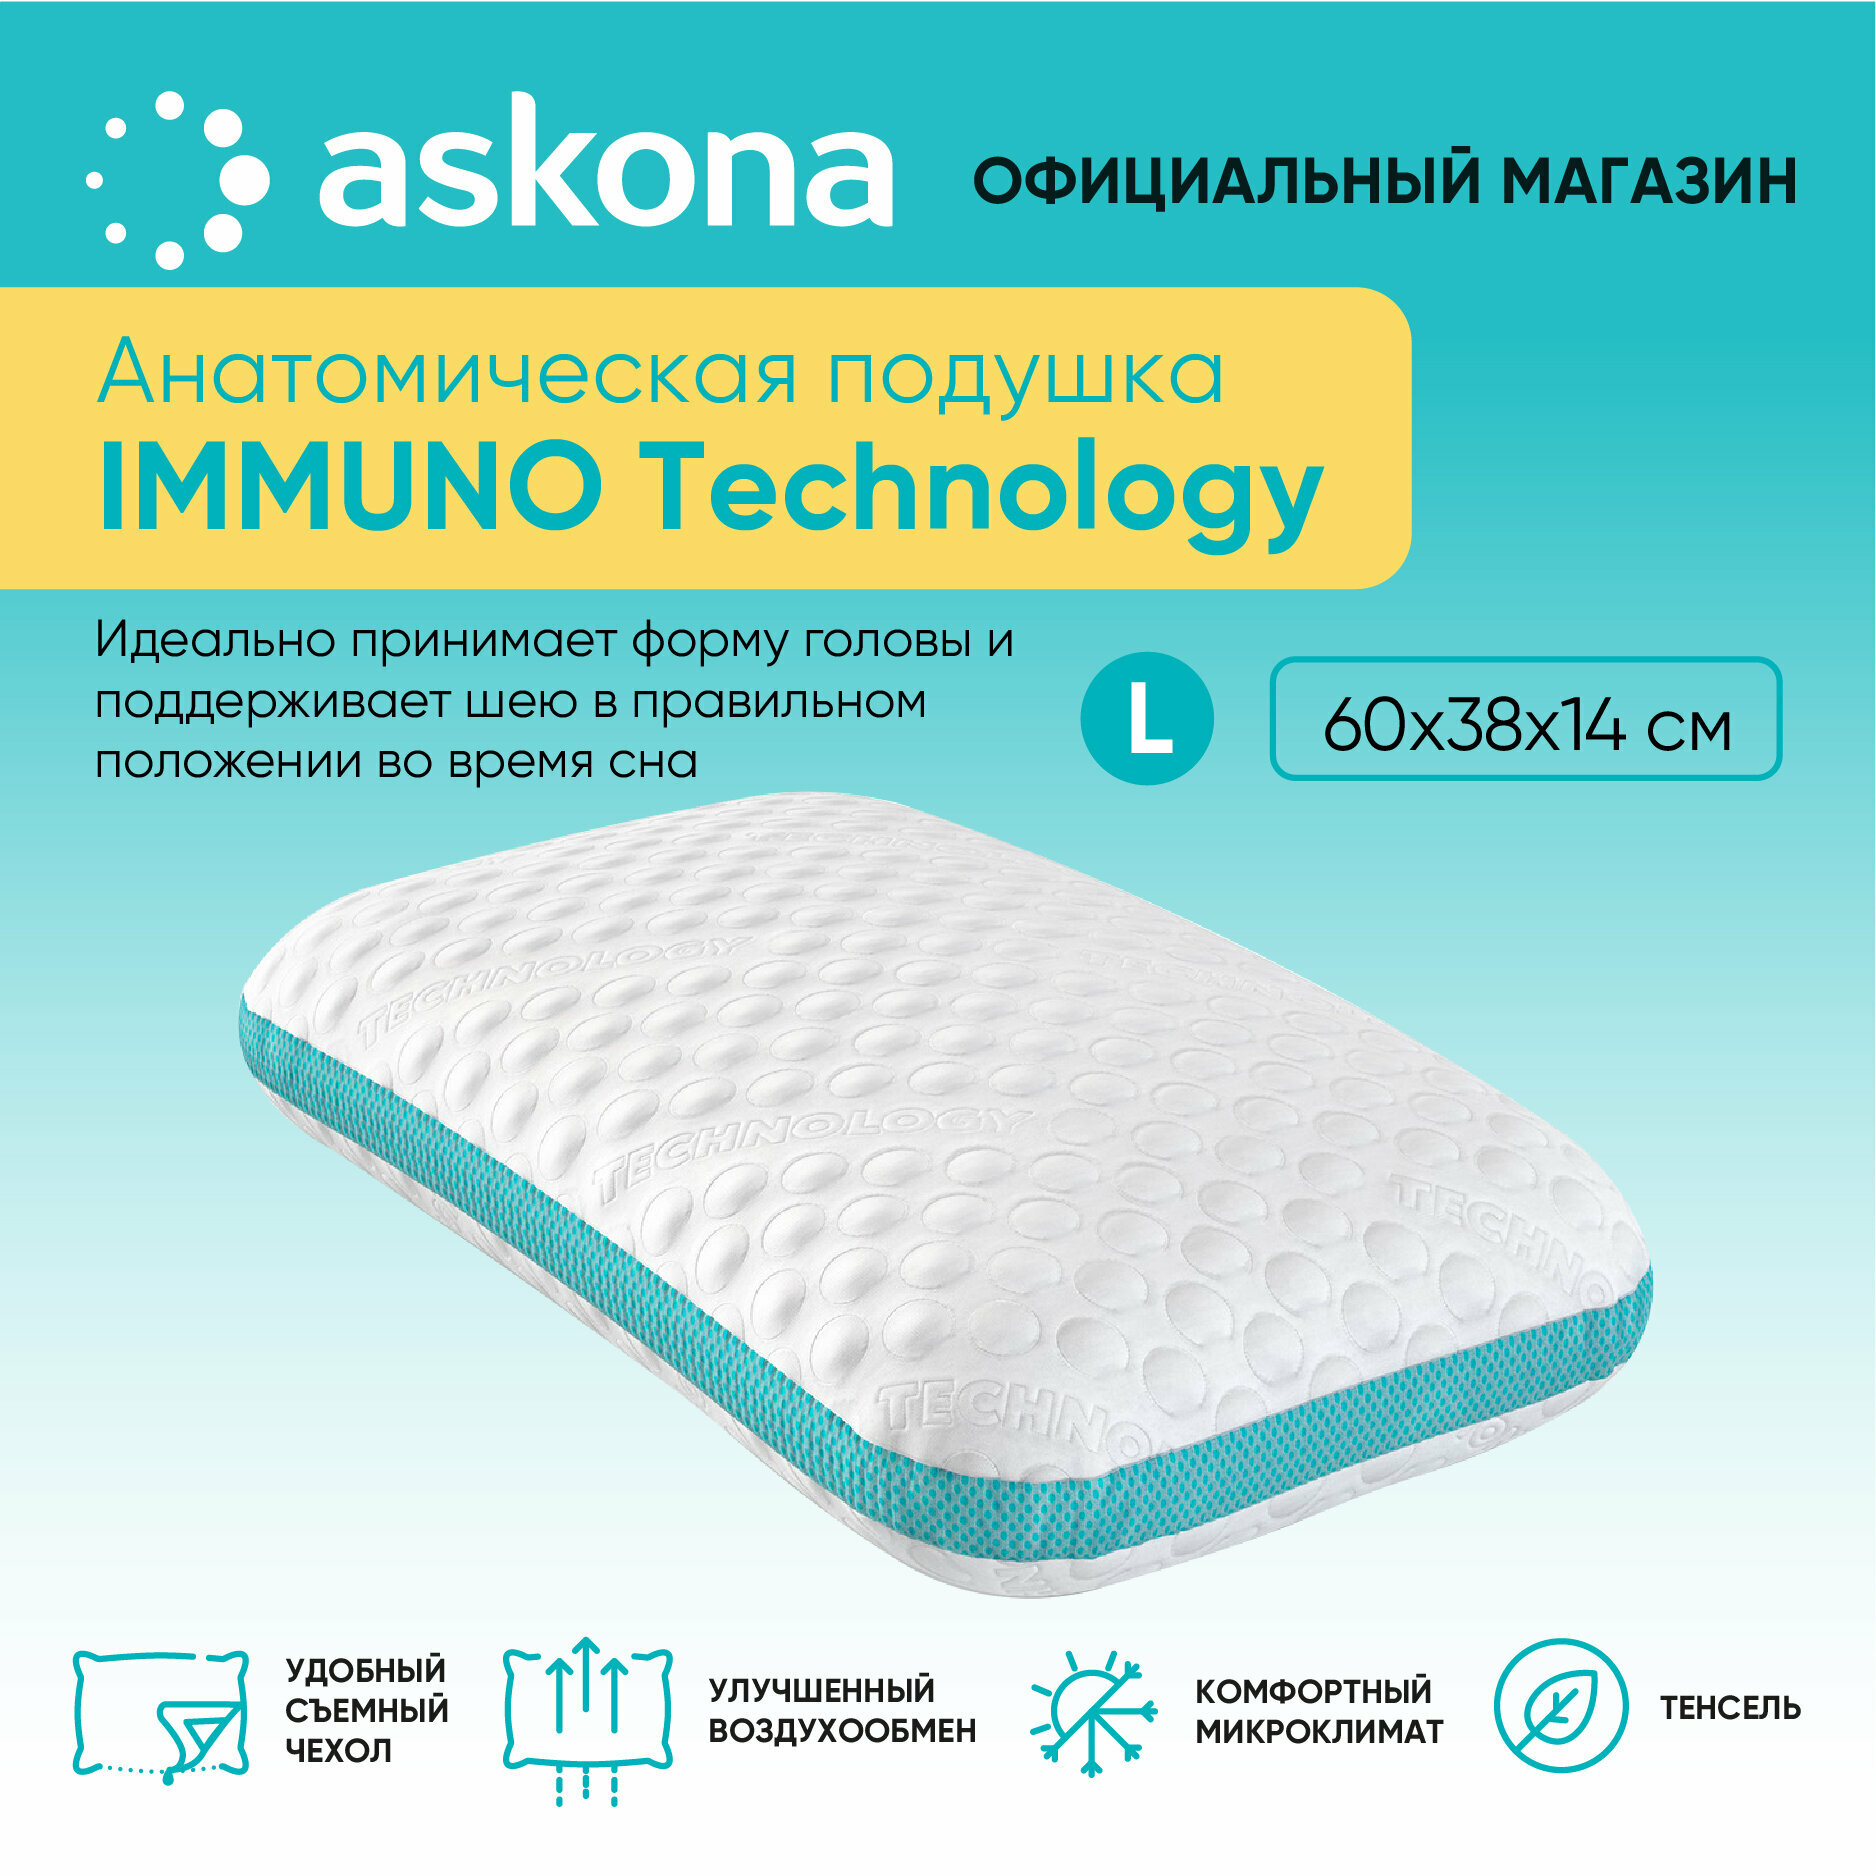 Анатомическая подушка Askona (Аскона) Immuno Technology L